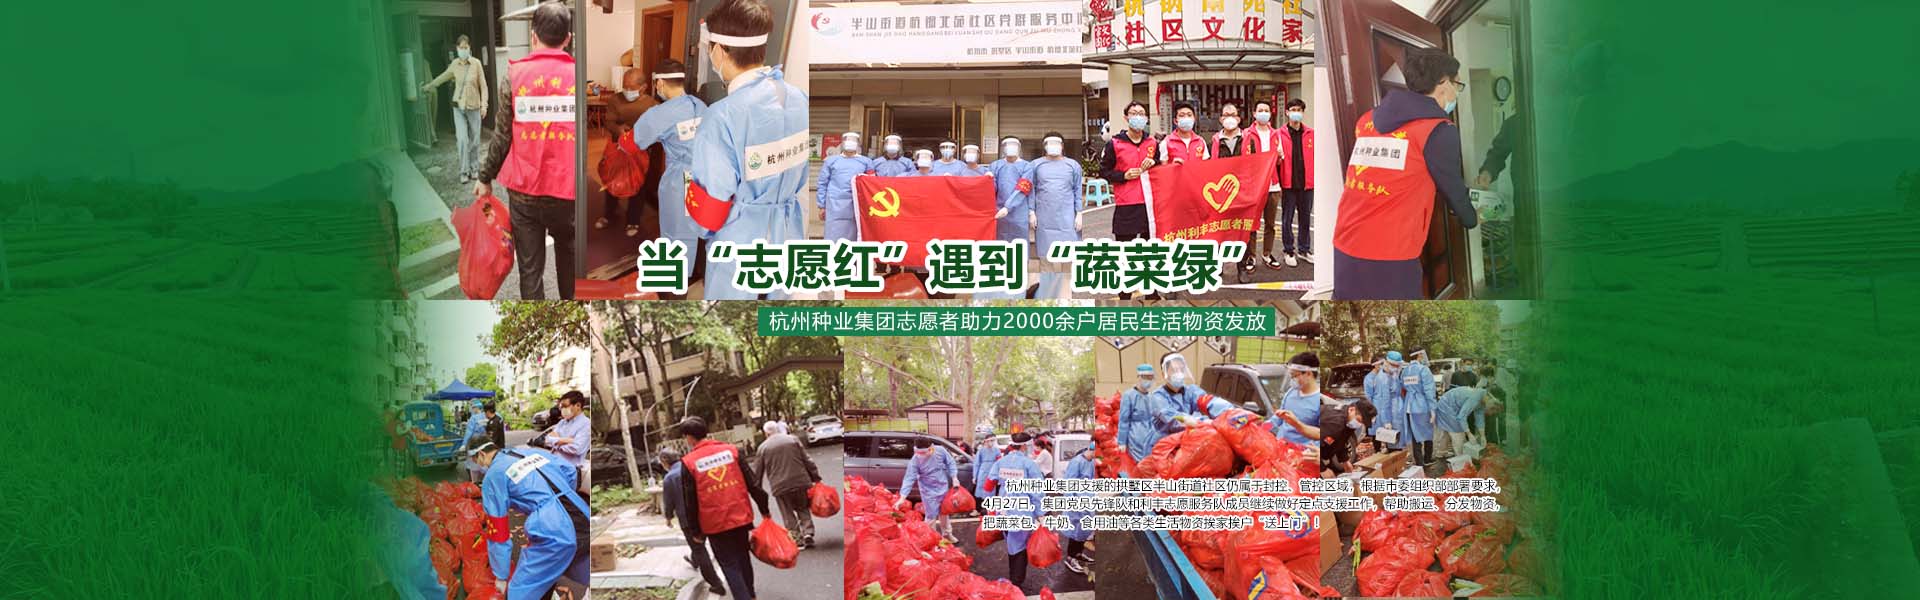 当“志愿红”遇到“蔬菜绿” ——杭州种业集团志愿者助力2000余户居民生活物资发放